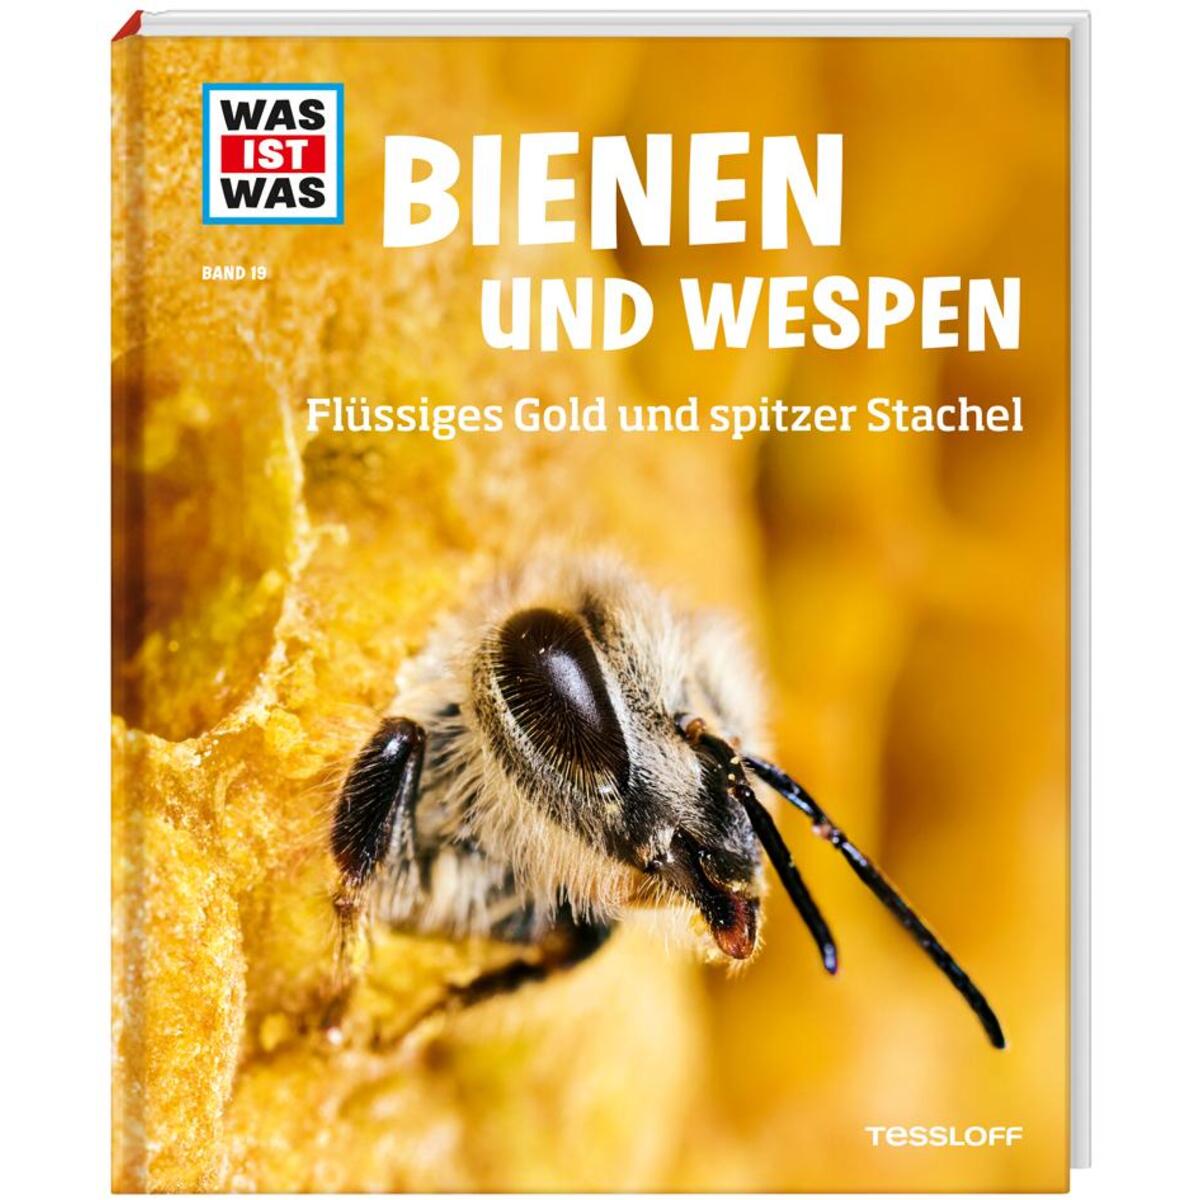 WAS IST WAS Band 19 Bienen und Wespen. Flüssiges Gold und spitzer Stachel von Tessloff Verlag